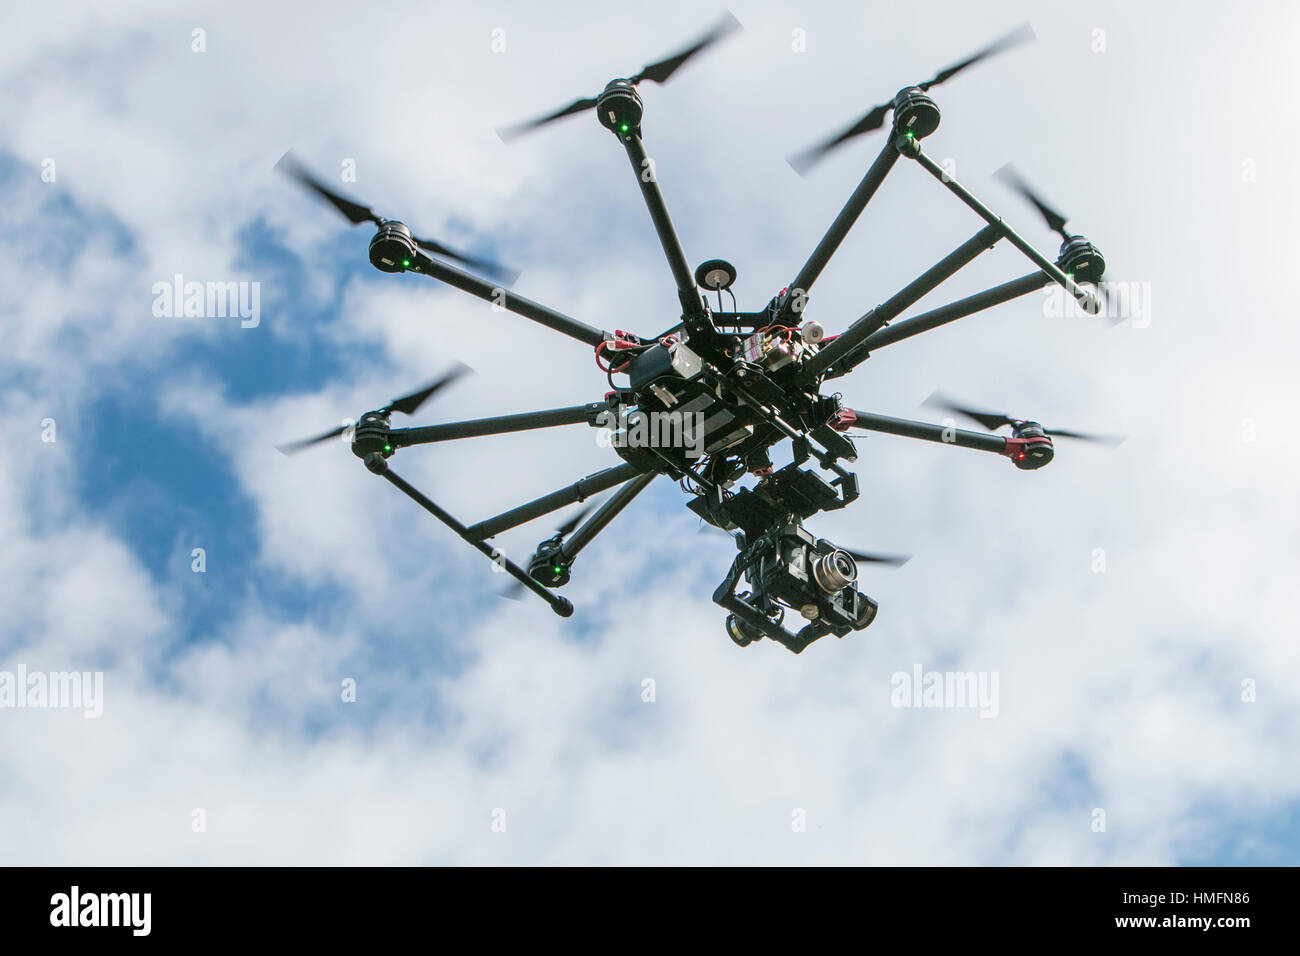 Un drone de l'appareil photo en action contre un ciel nuageux Banque D'Images